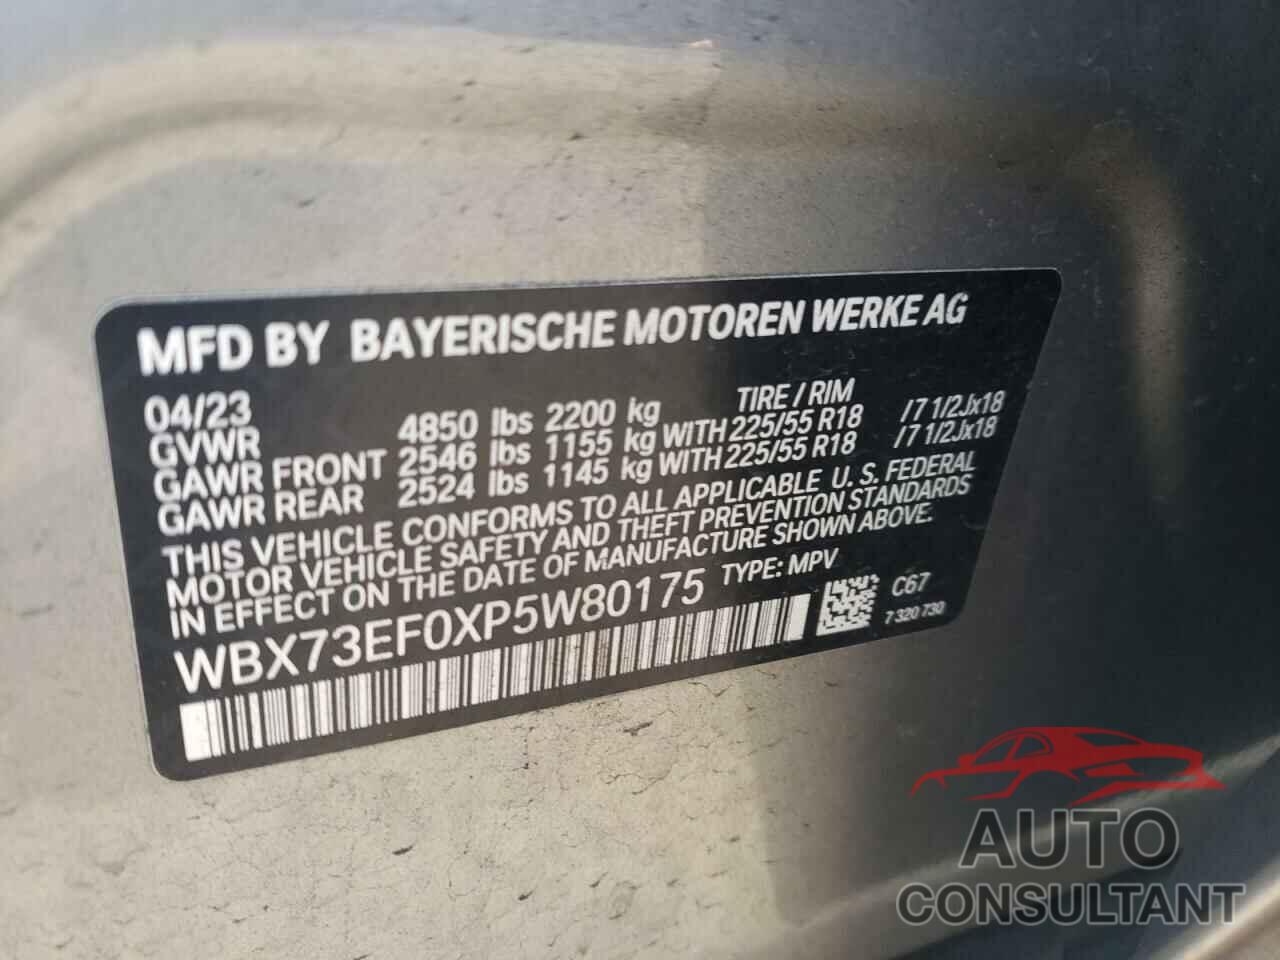 BMW X1 2023 - WBX73EF0XP5W80175